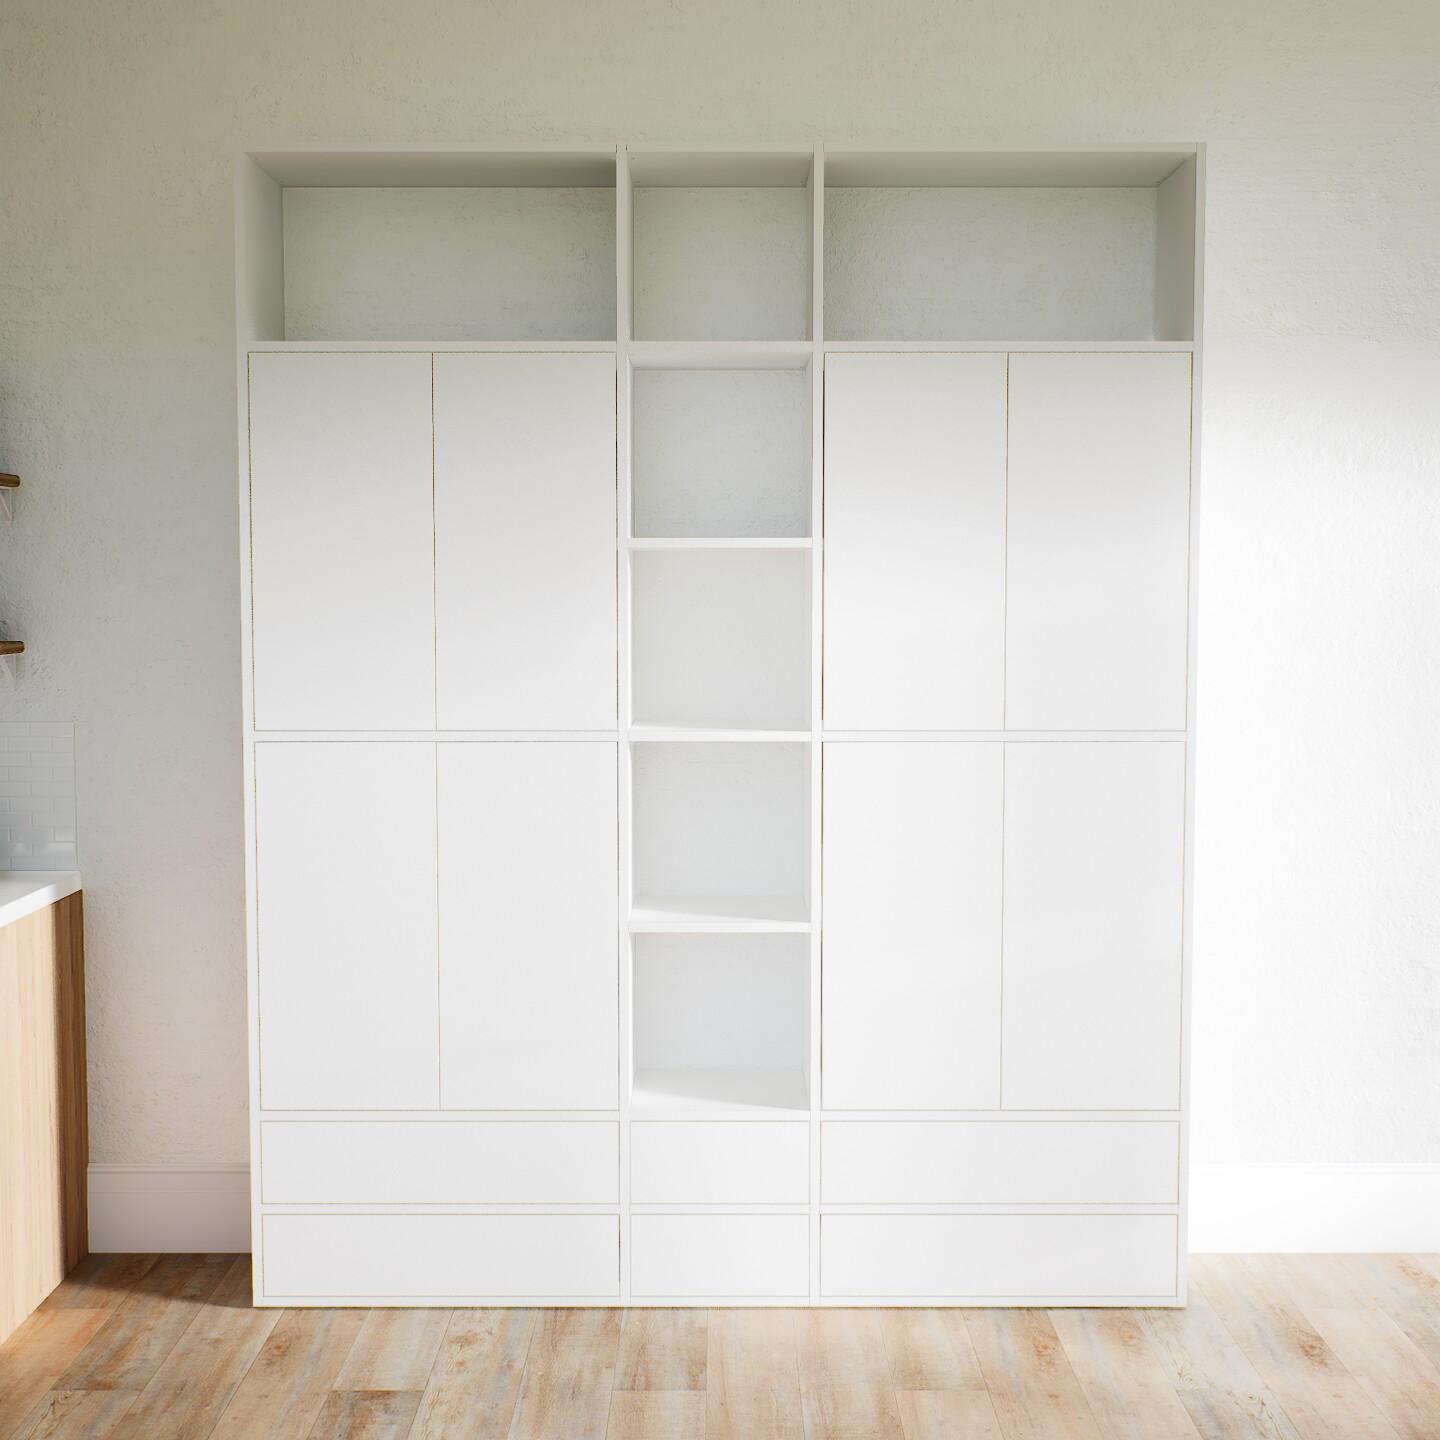 Wohnwand Weiß - Individuelle Designer-Regalwand: Schubladen in Weiß & Türen in Weiß - Hochwertige Materialien - 190 x 233 x 34 cm, Konfigurator von MYCS